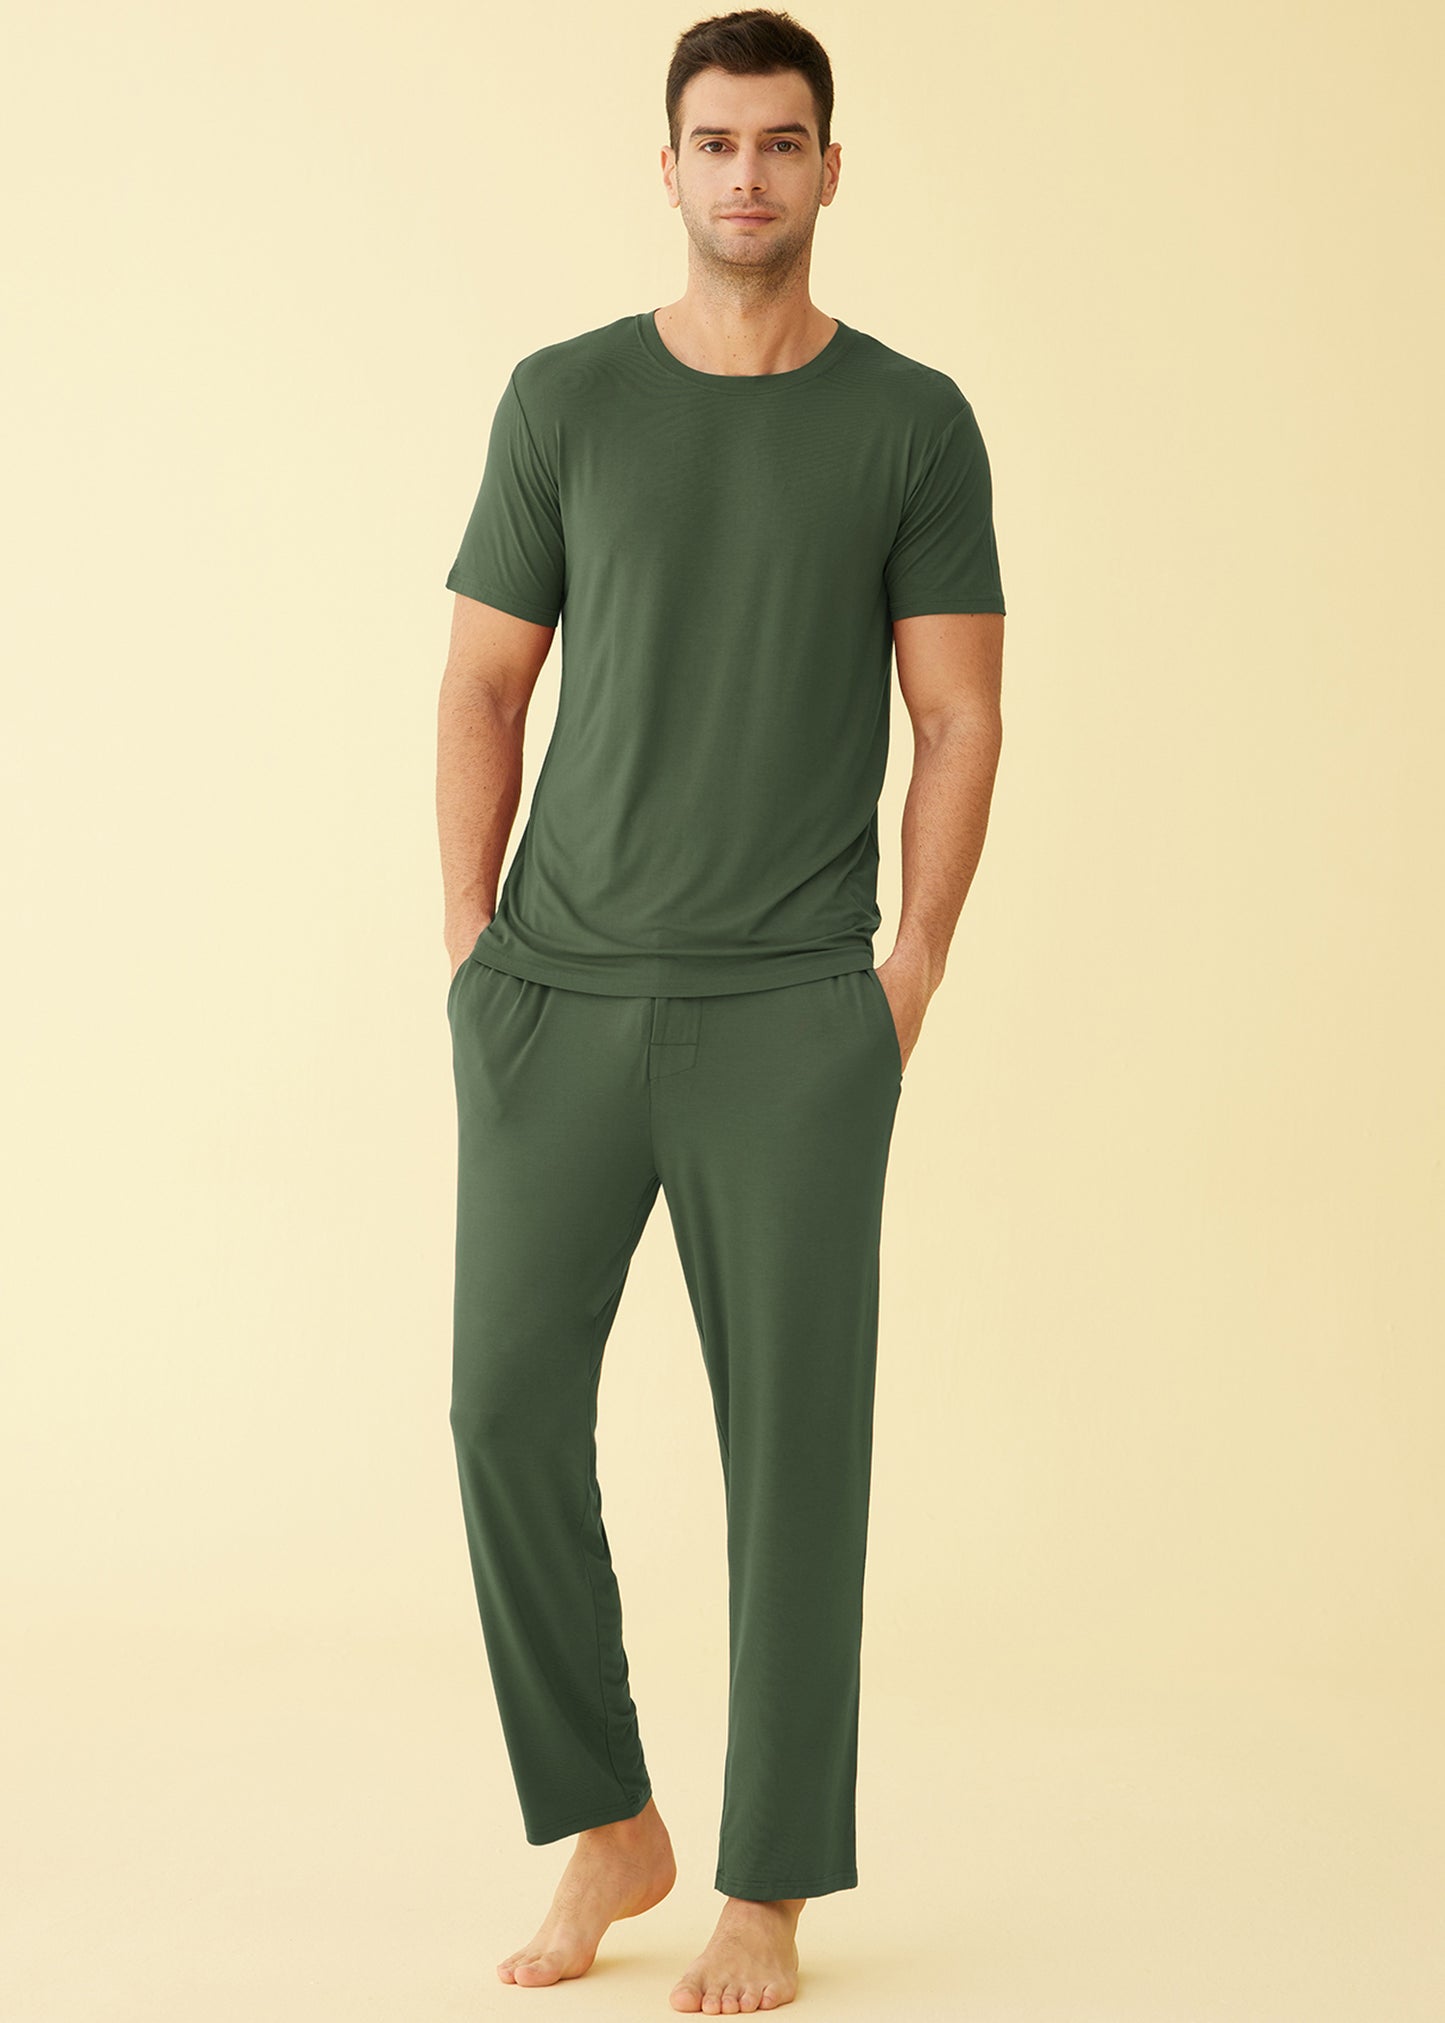 Men's Bamboo Viscose Pajamas Set Shirt and Pants with Pockets